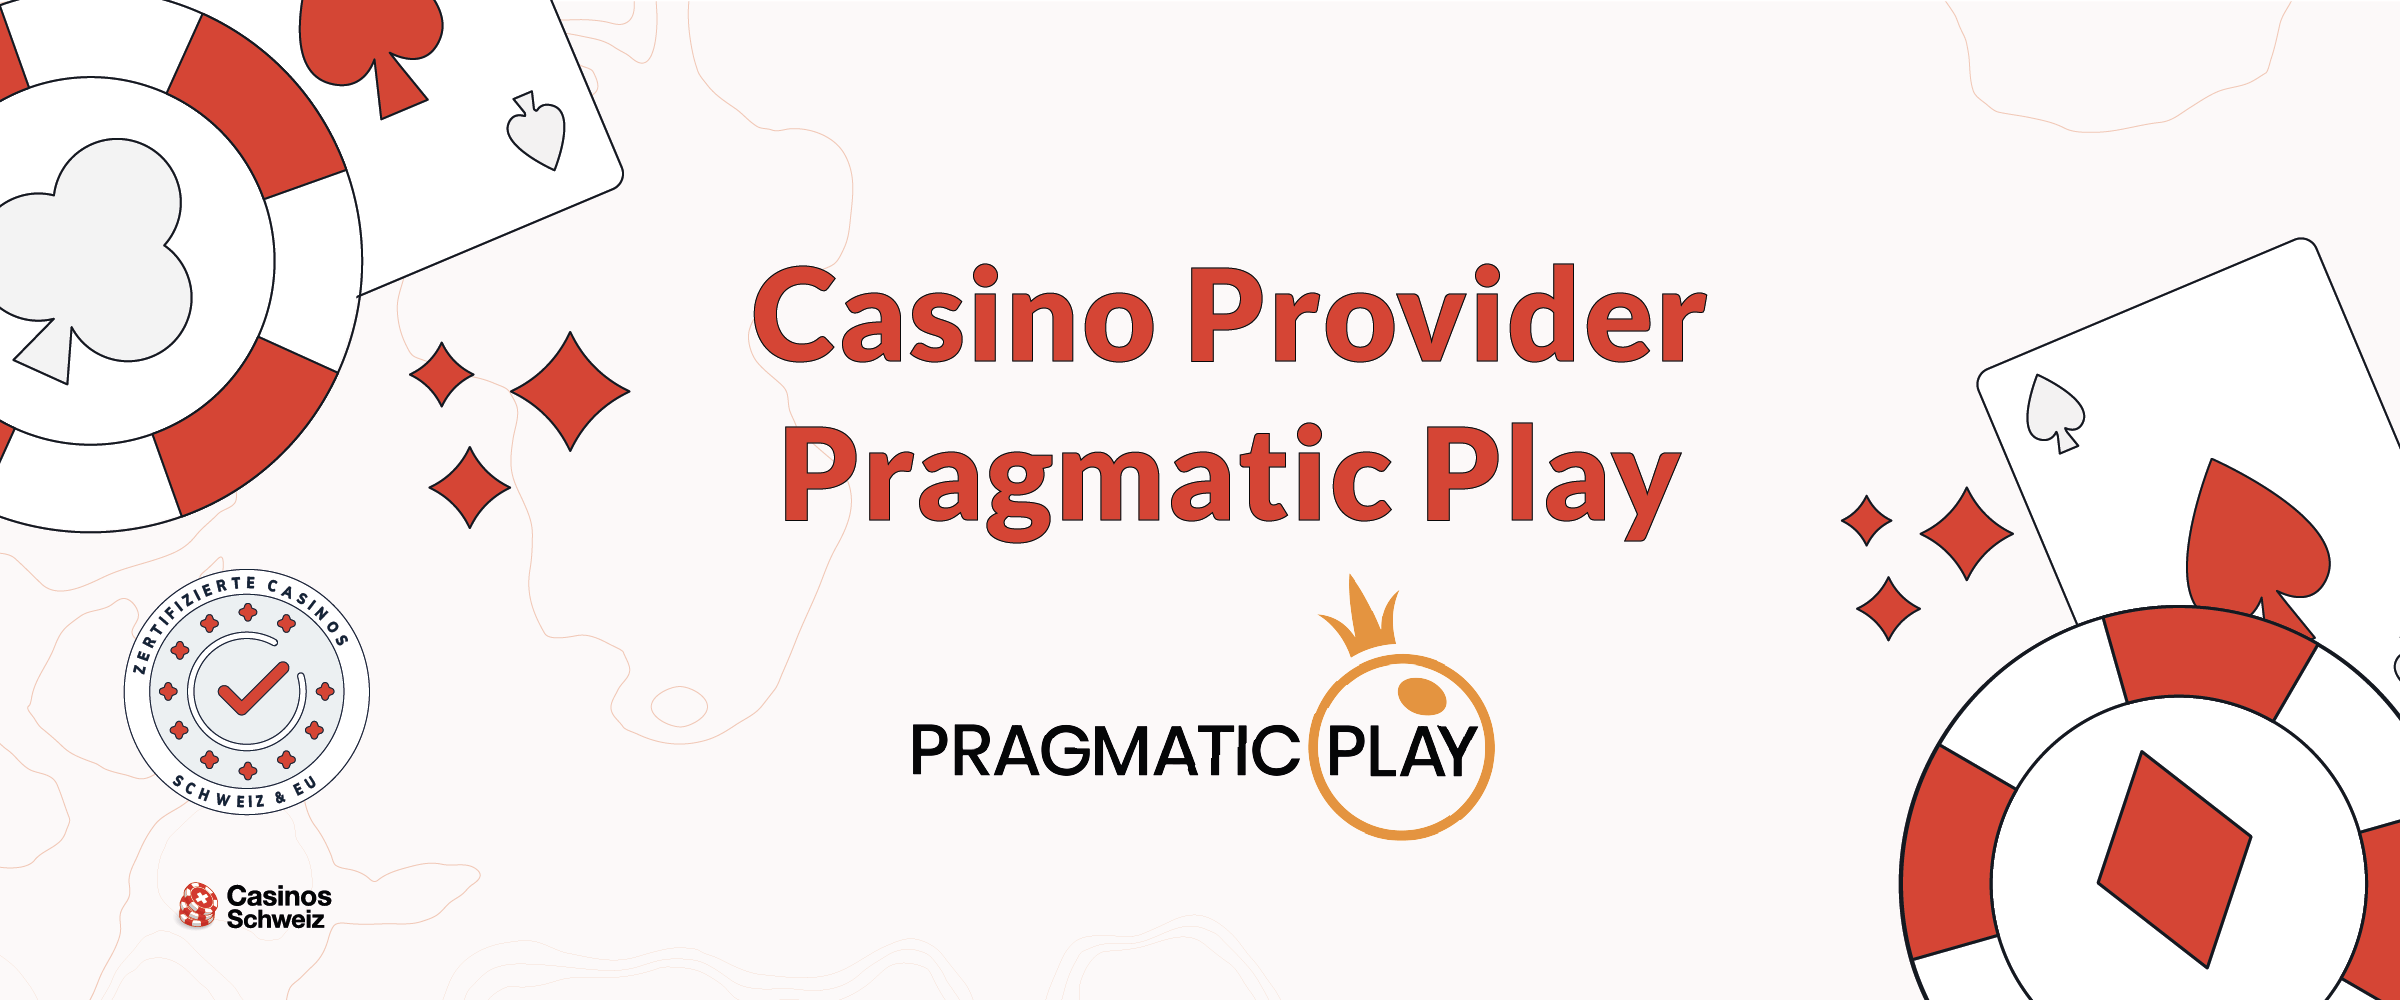 Casino Provider Pragmatic Play